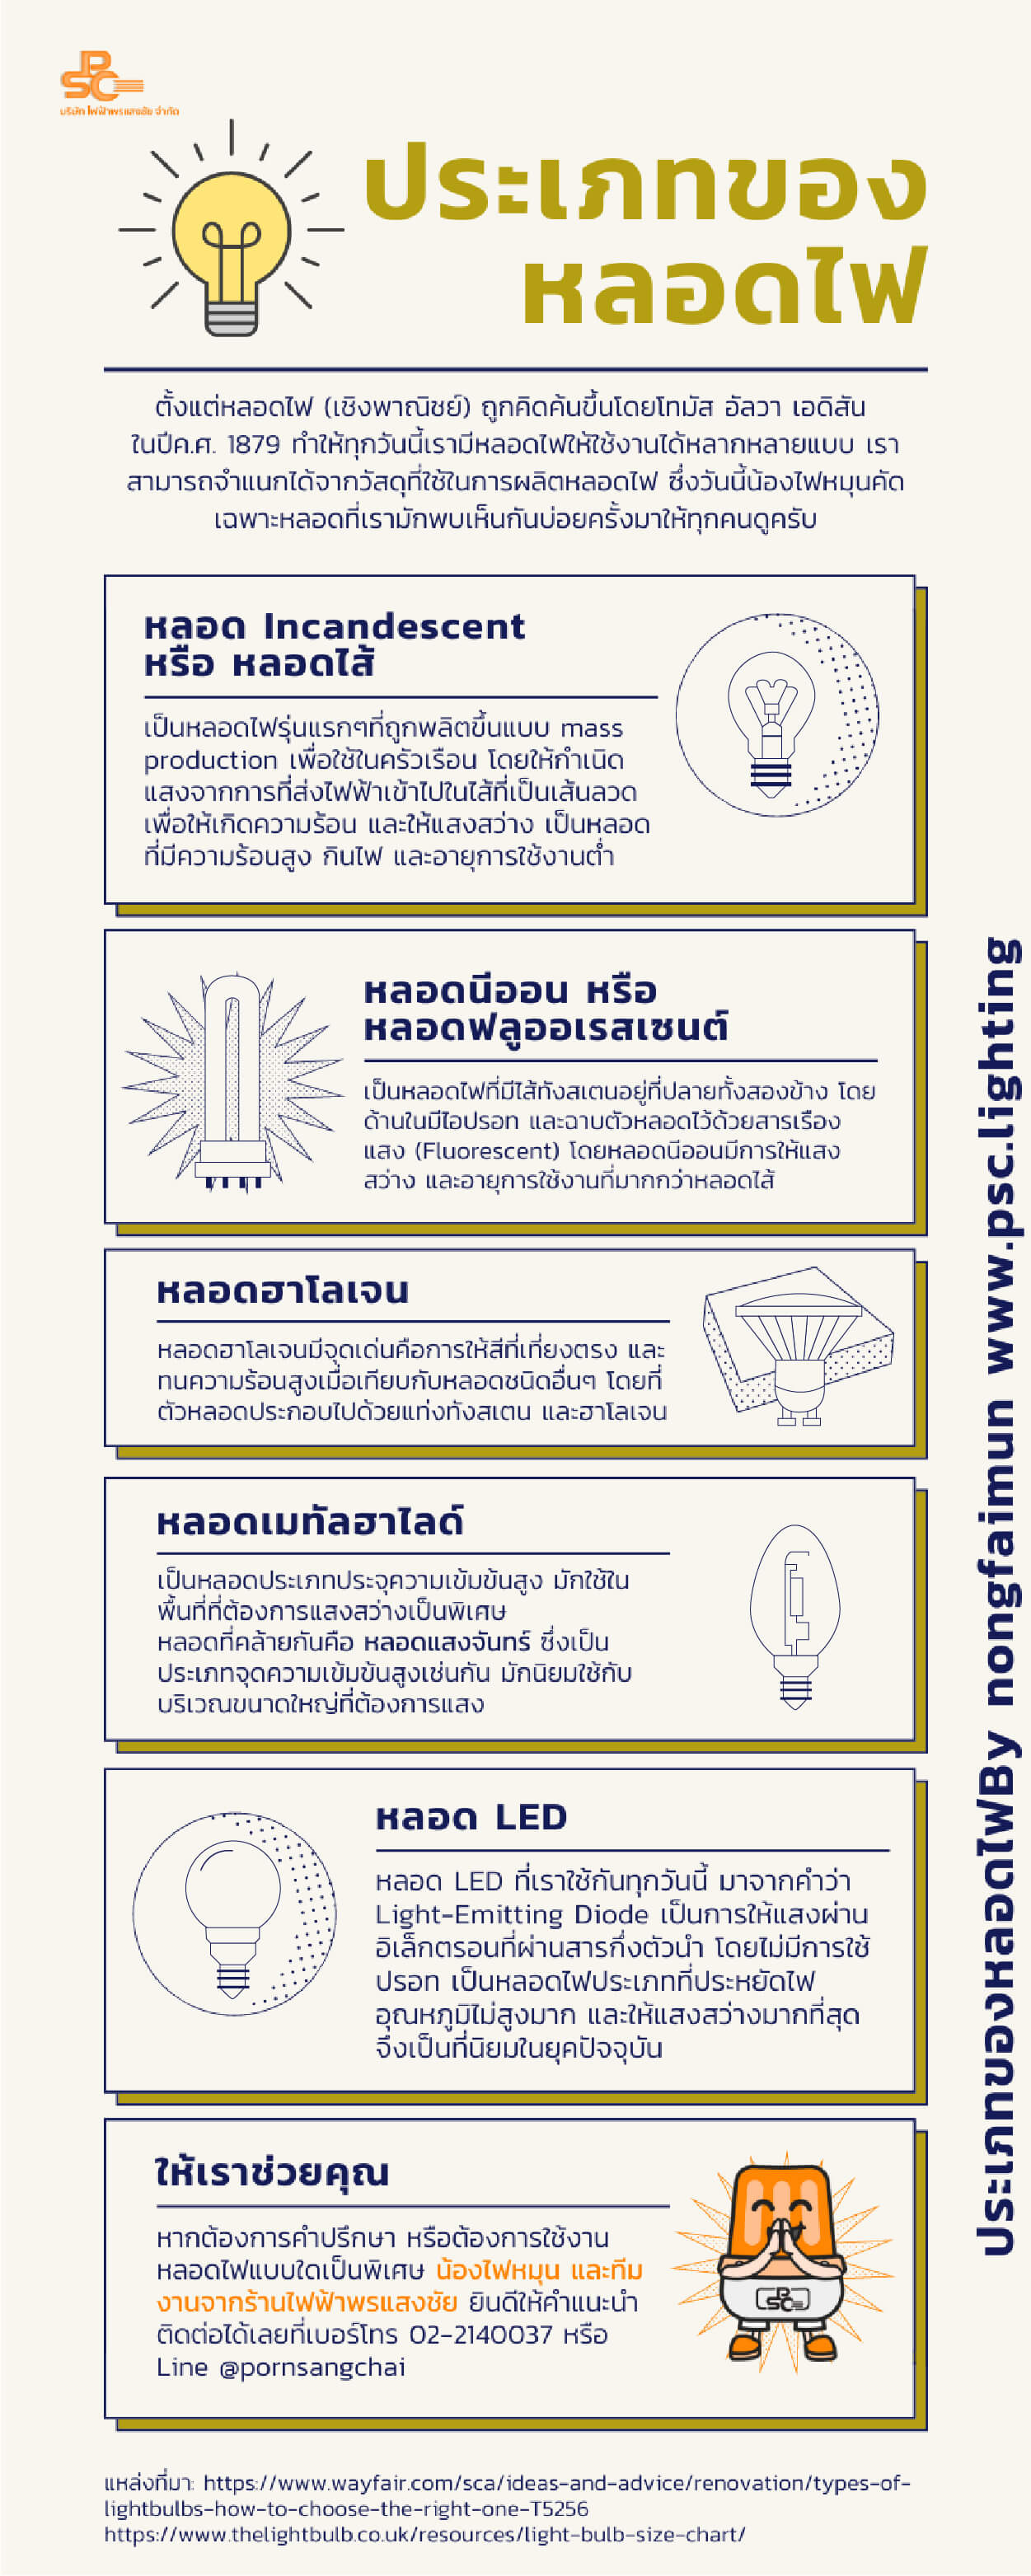 ประเภทของหลอดไฟ infographic by psc